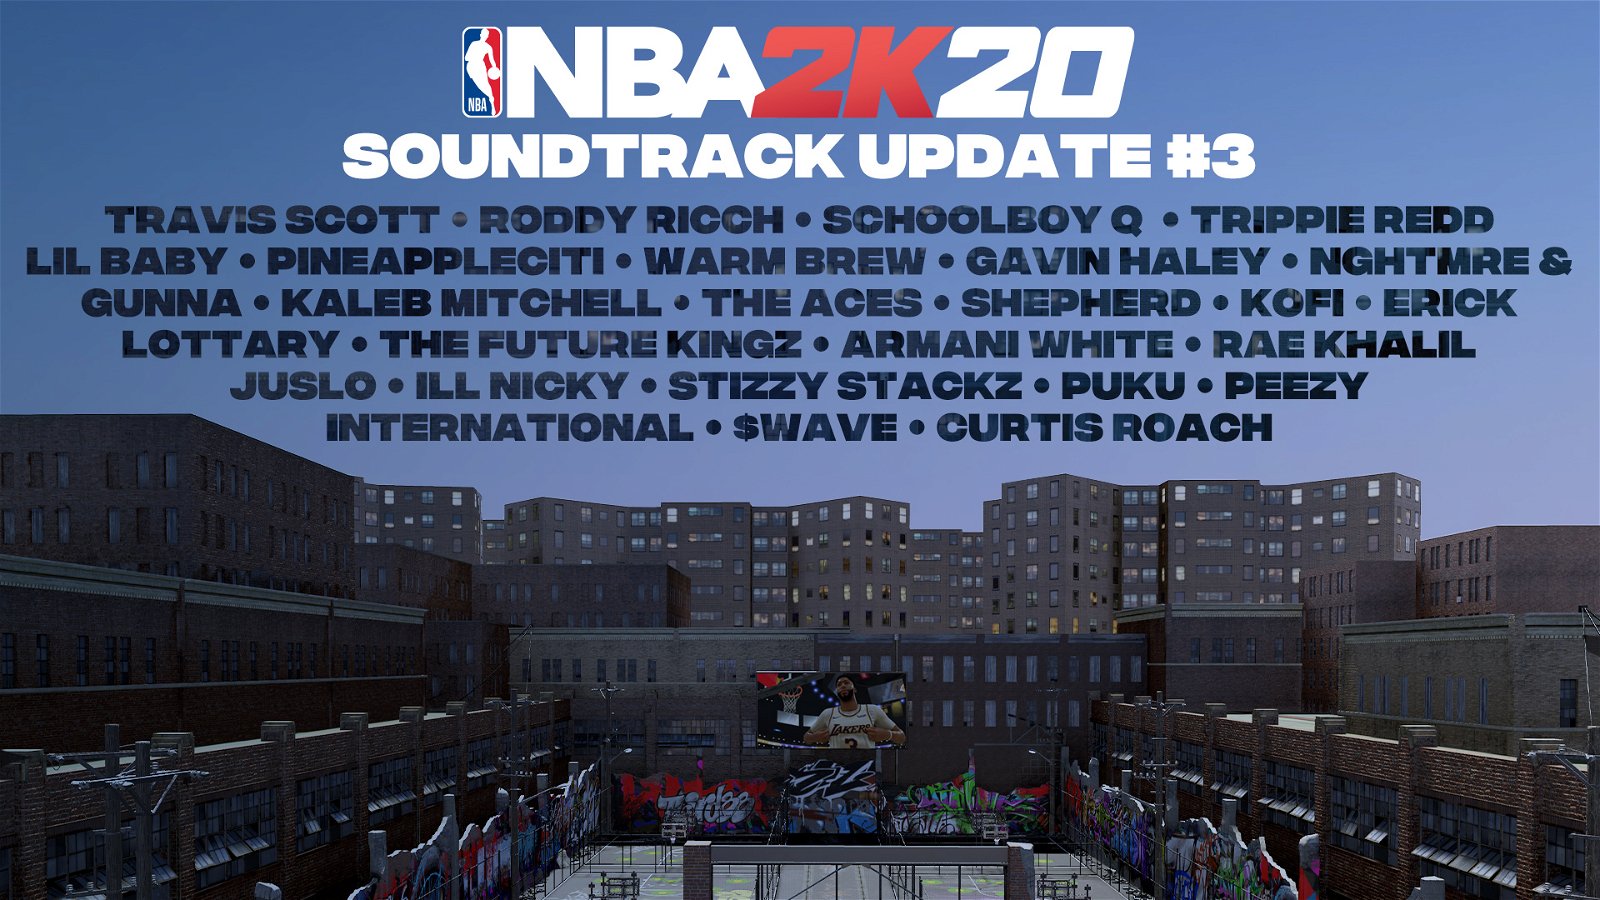 NBA 2K20, la colonna sonora si aggiorna con brani di Travis Scott ed altri artisti emergenti